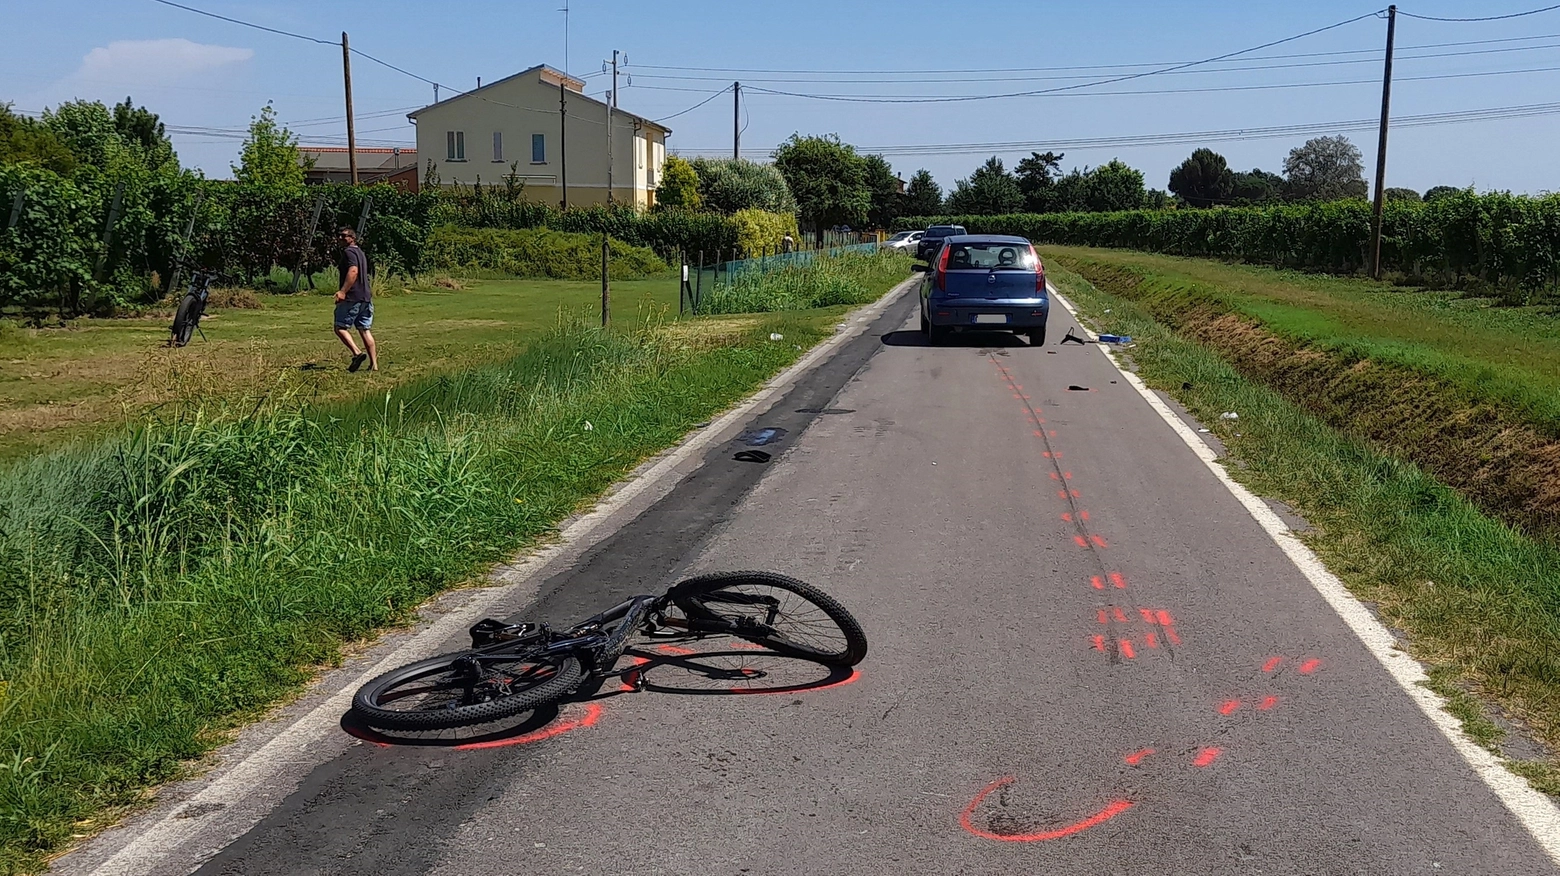 Incidente a Lugo, grave una ciclista 49enne dopo lo scontro con un'auto (Scardovi)